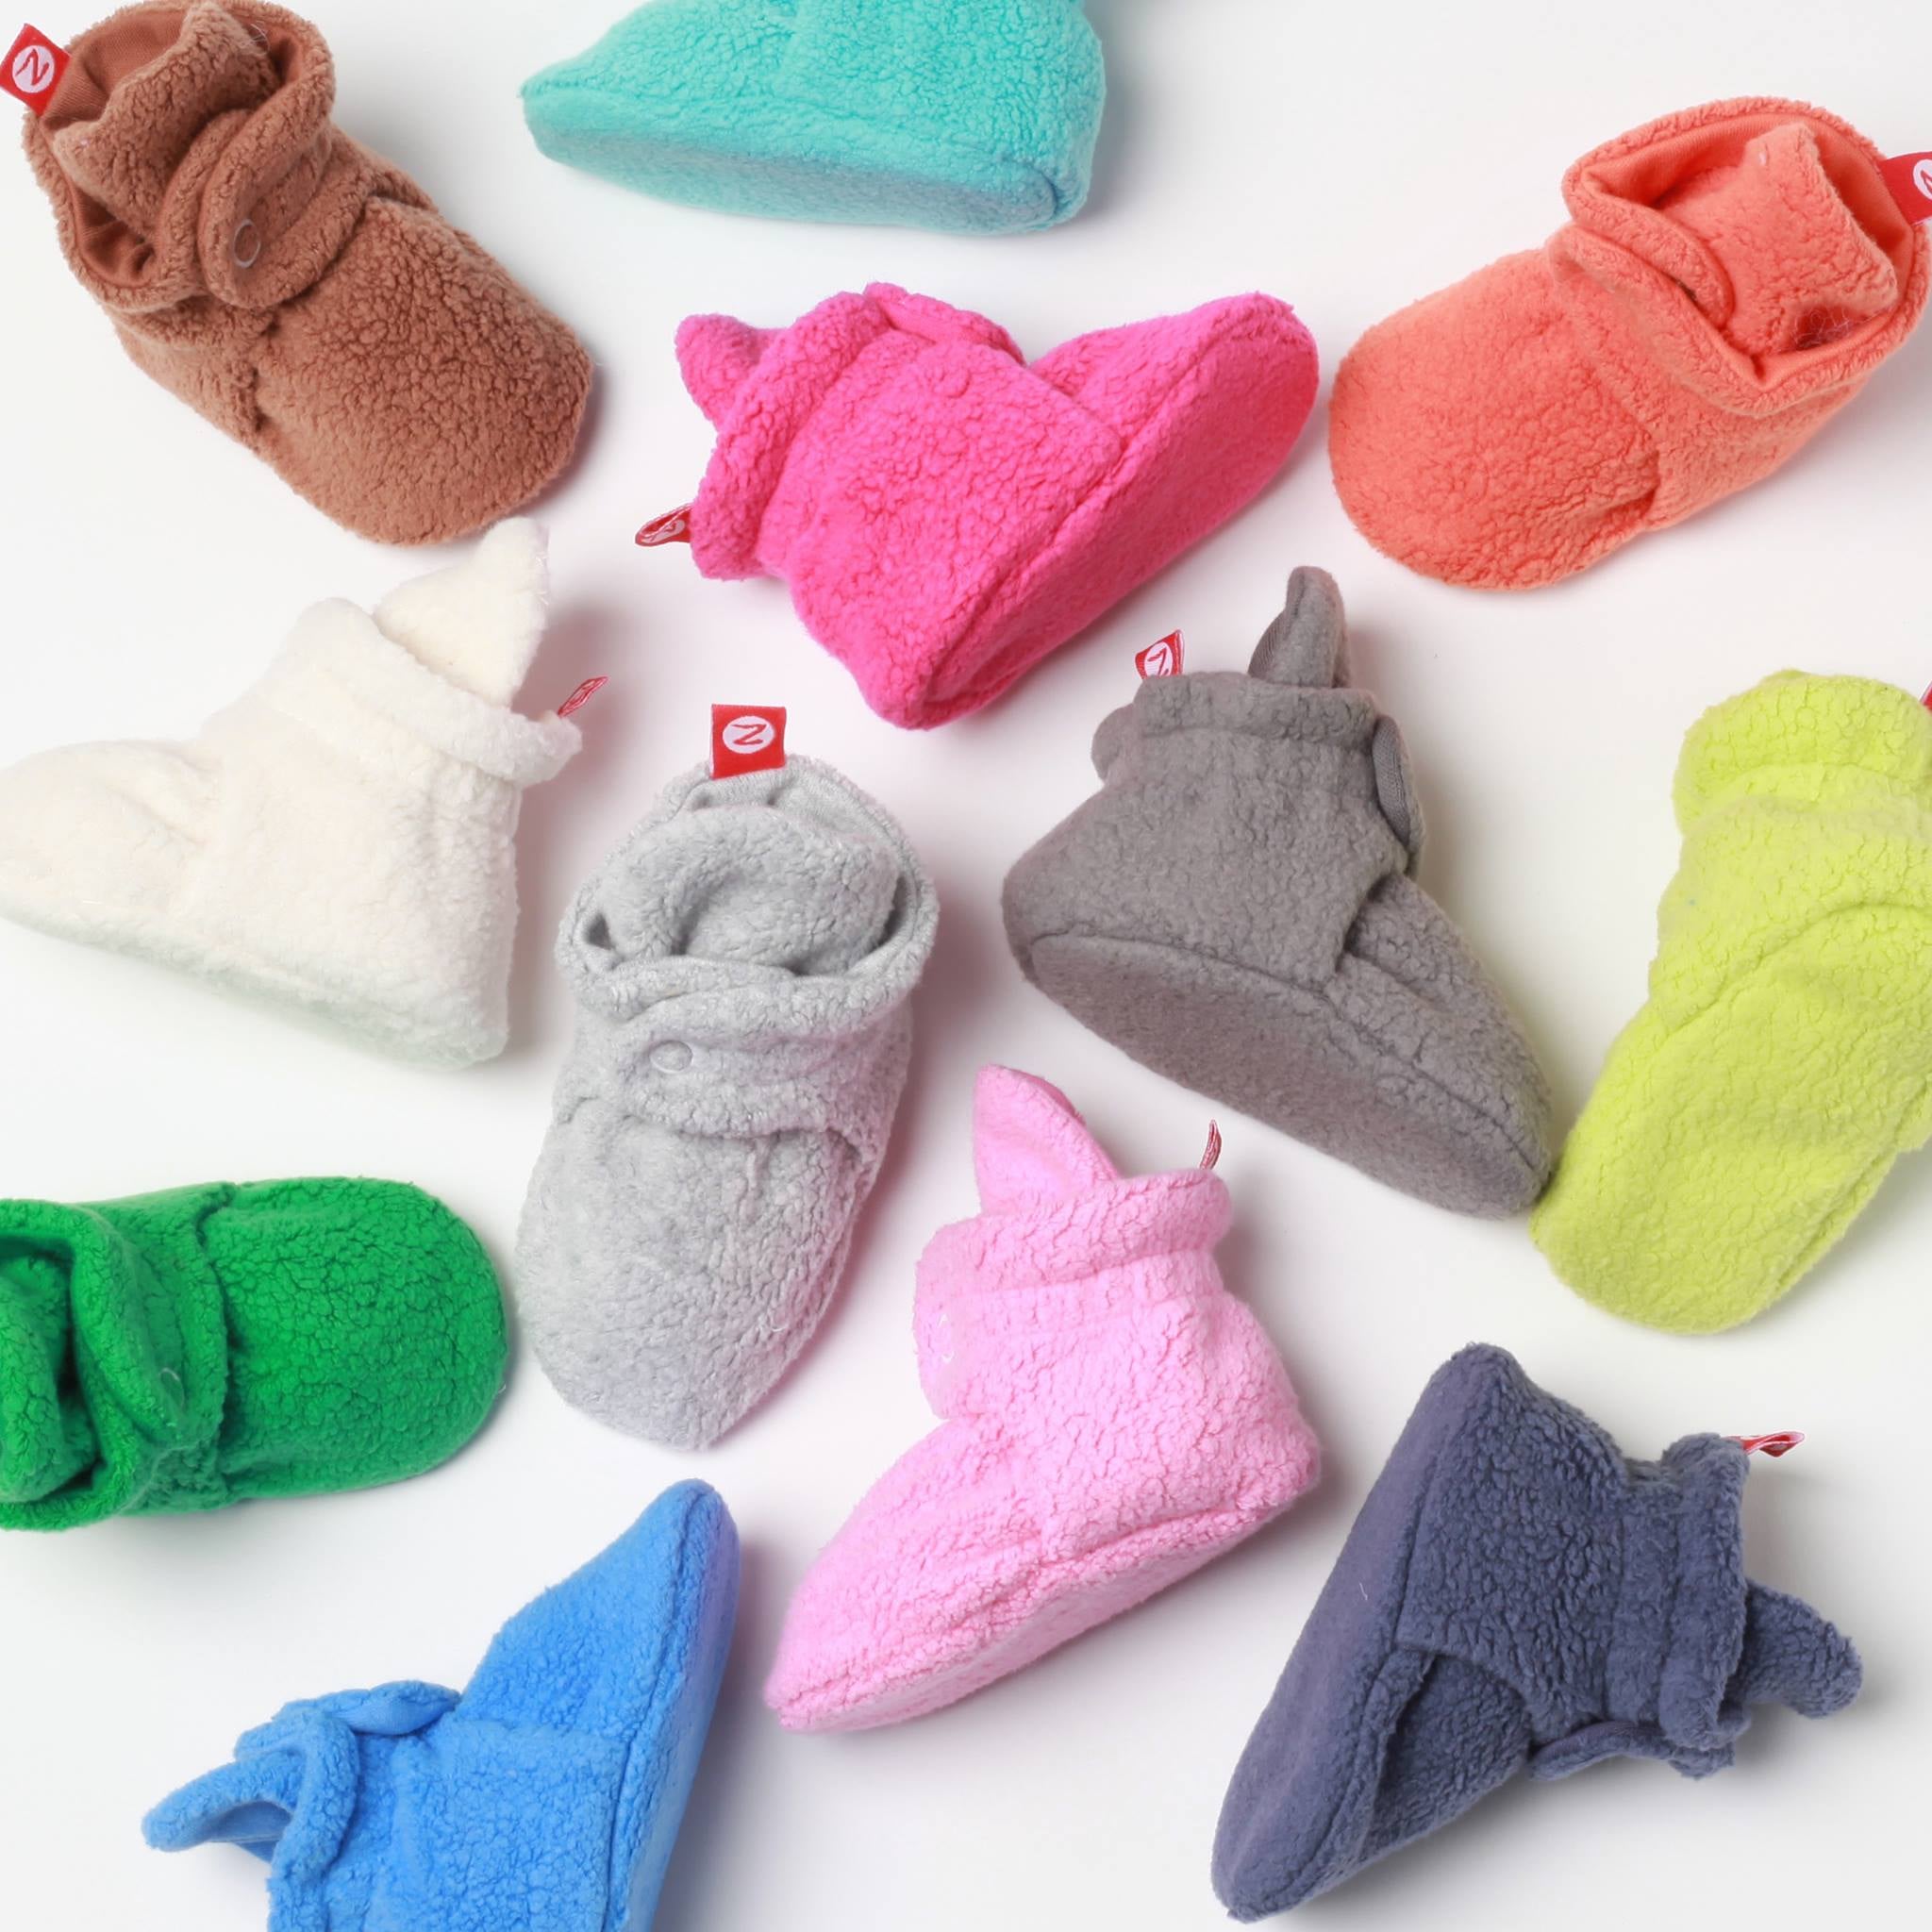 newborn socks that stay on